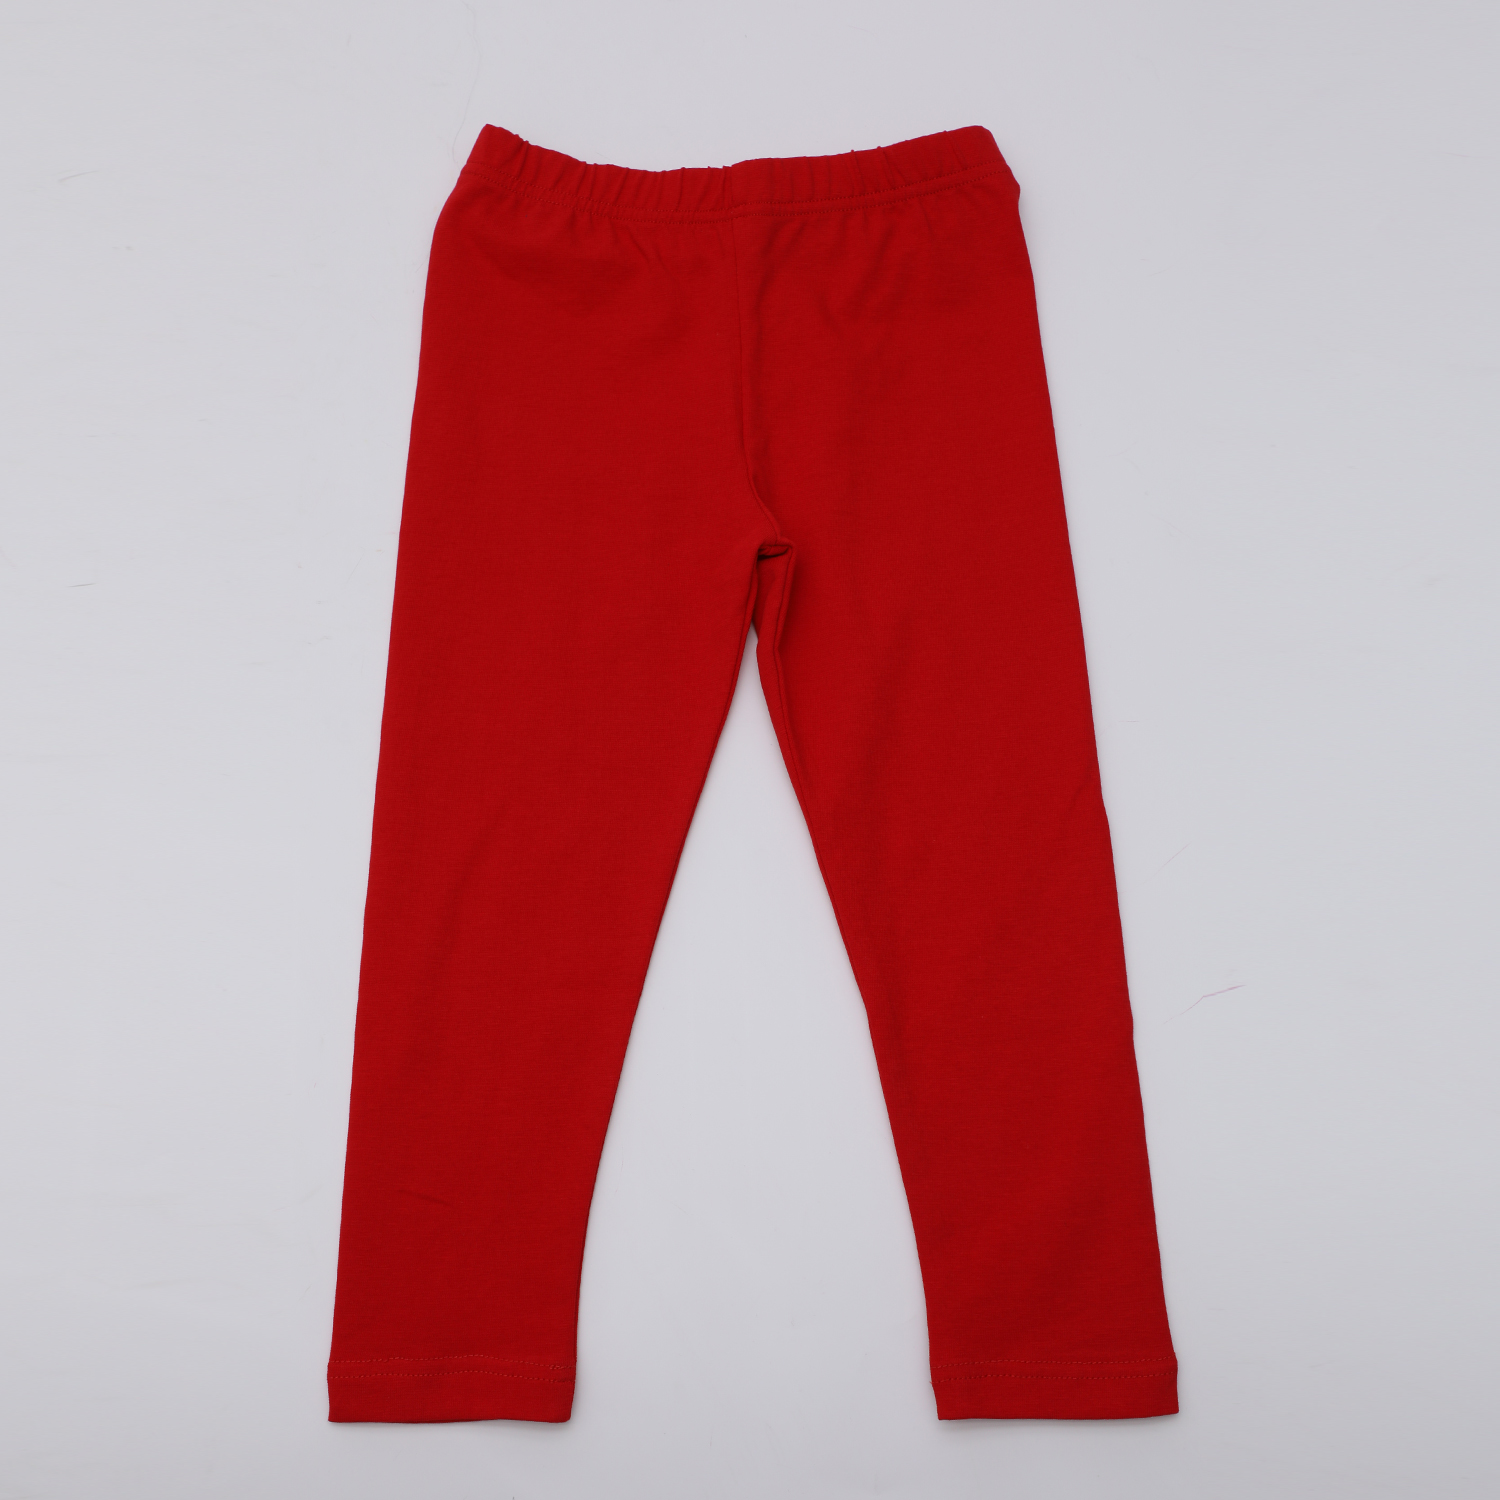 Παιδικά/Girls/Ρούχα/Παντελόνια SAM 0-13 - Παιδικό κολάν SAM 0-13 κόκκινο